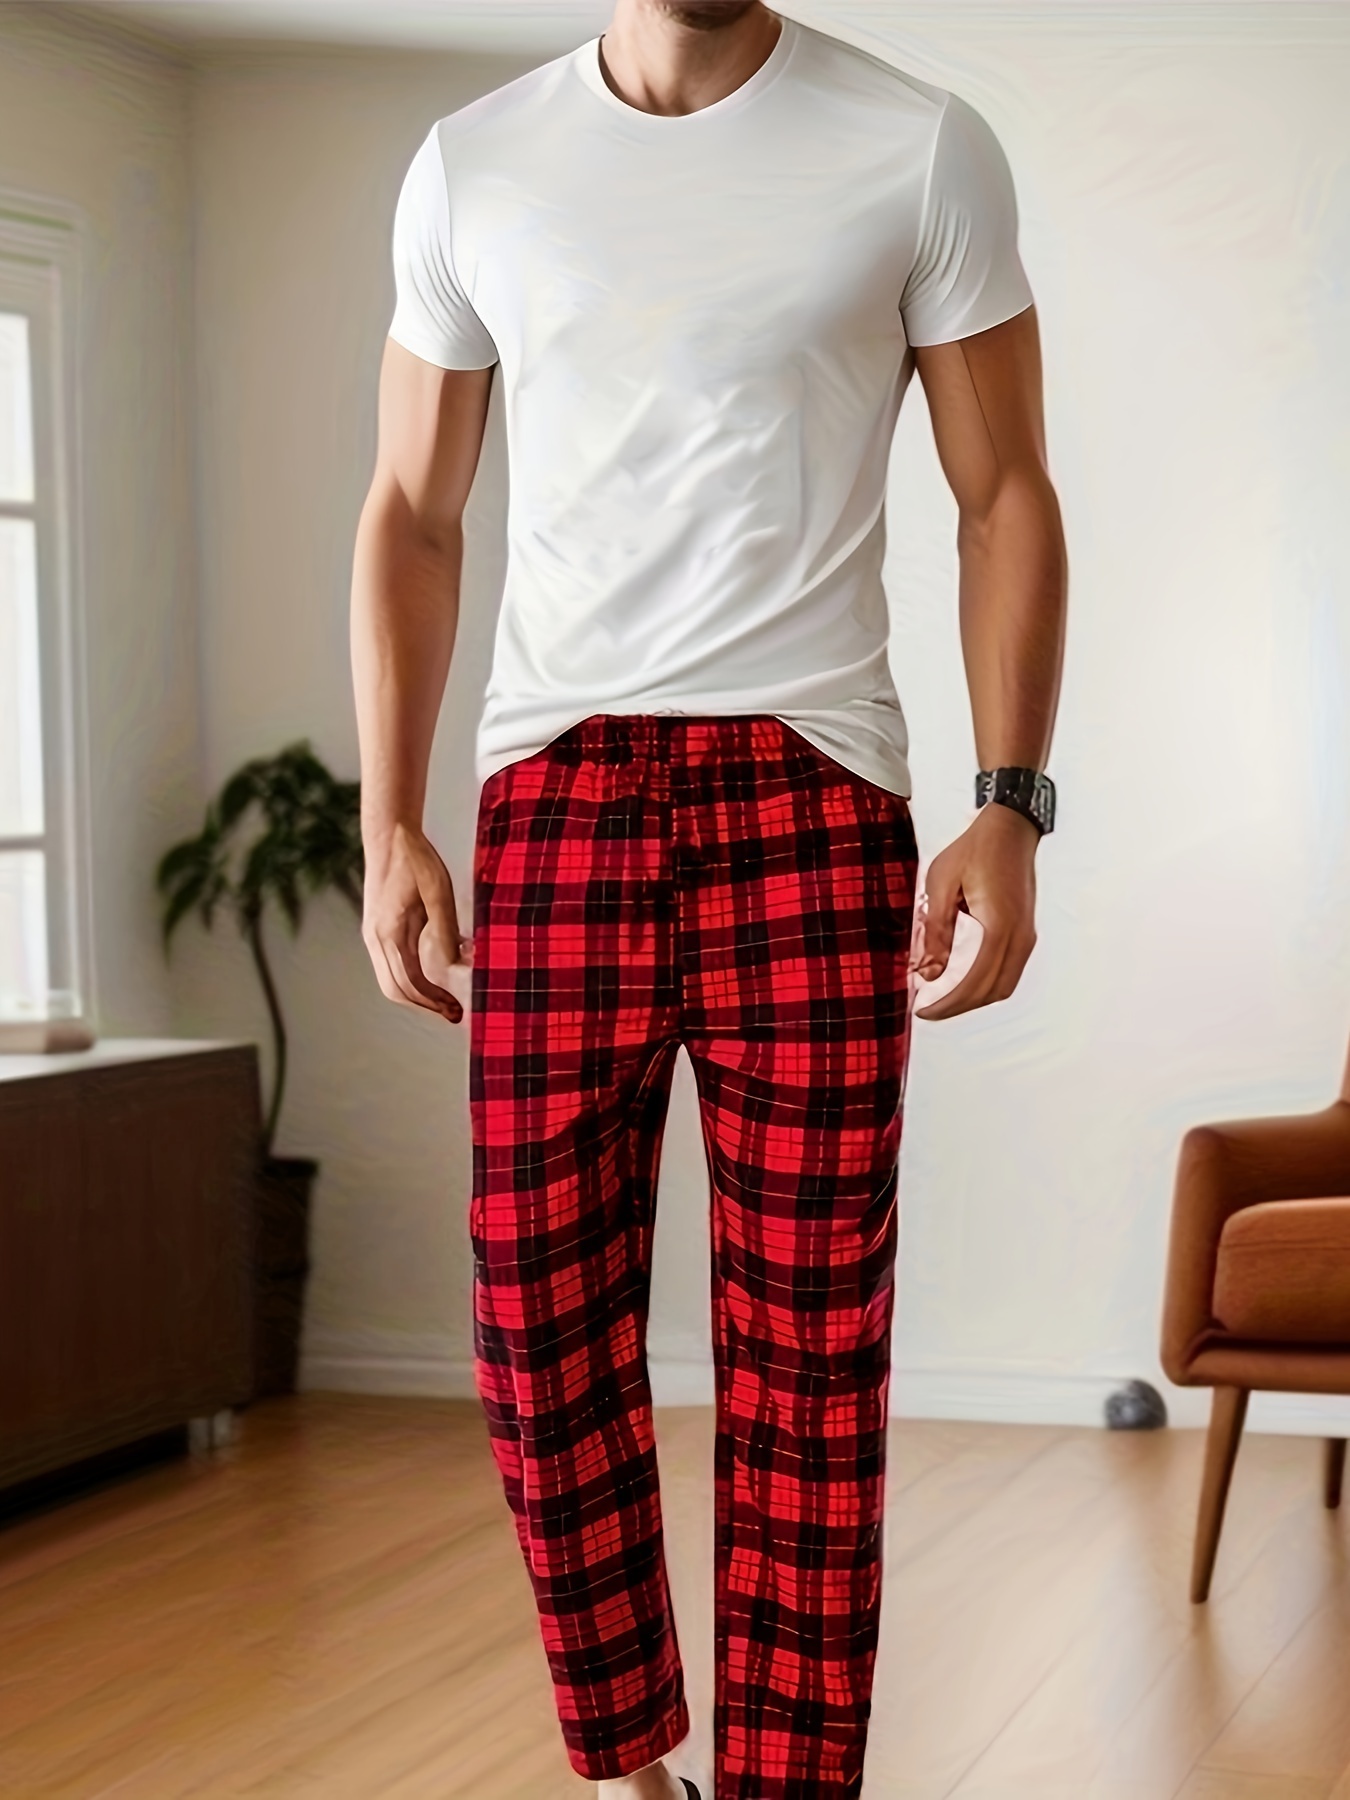 pijama hombre felpa pantalon-cuadro. Camiseta botones